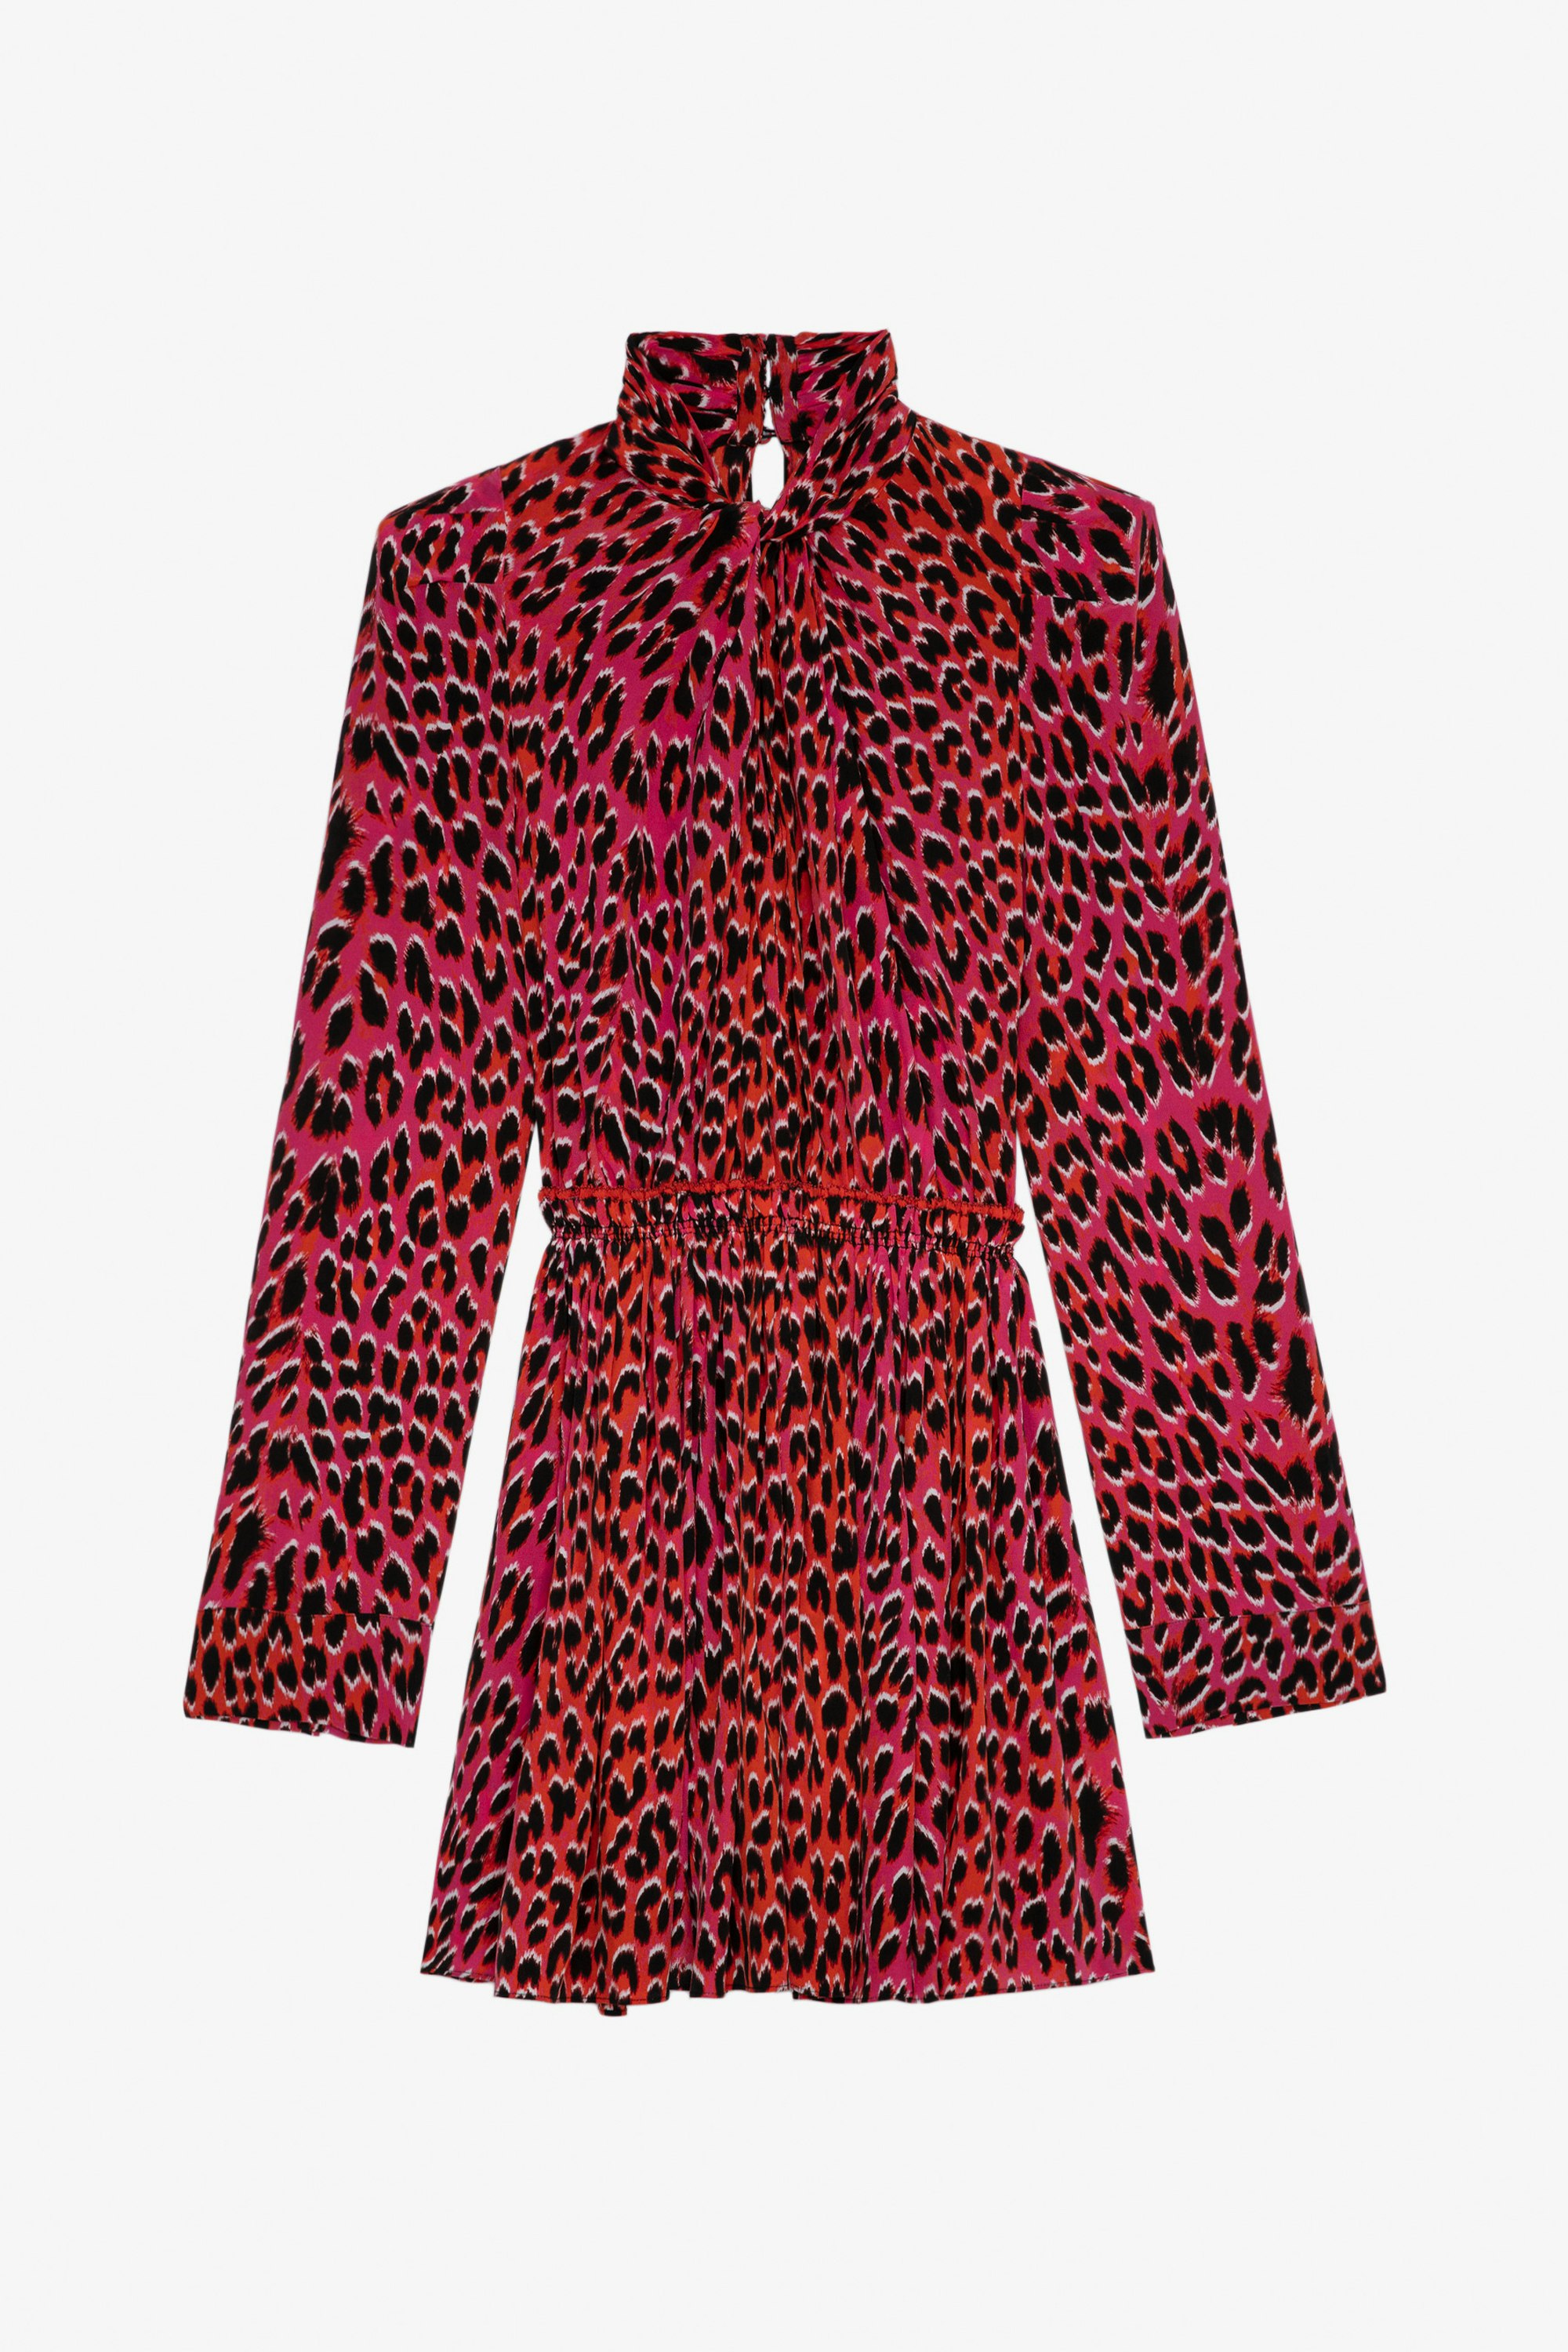 Ryde Leopard Silk Dress - Women’s short pink leopard-print silk pussy-bow dress.